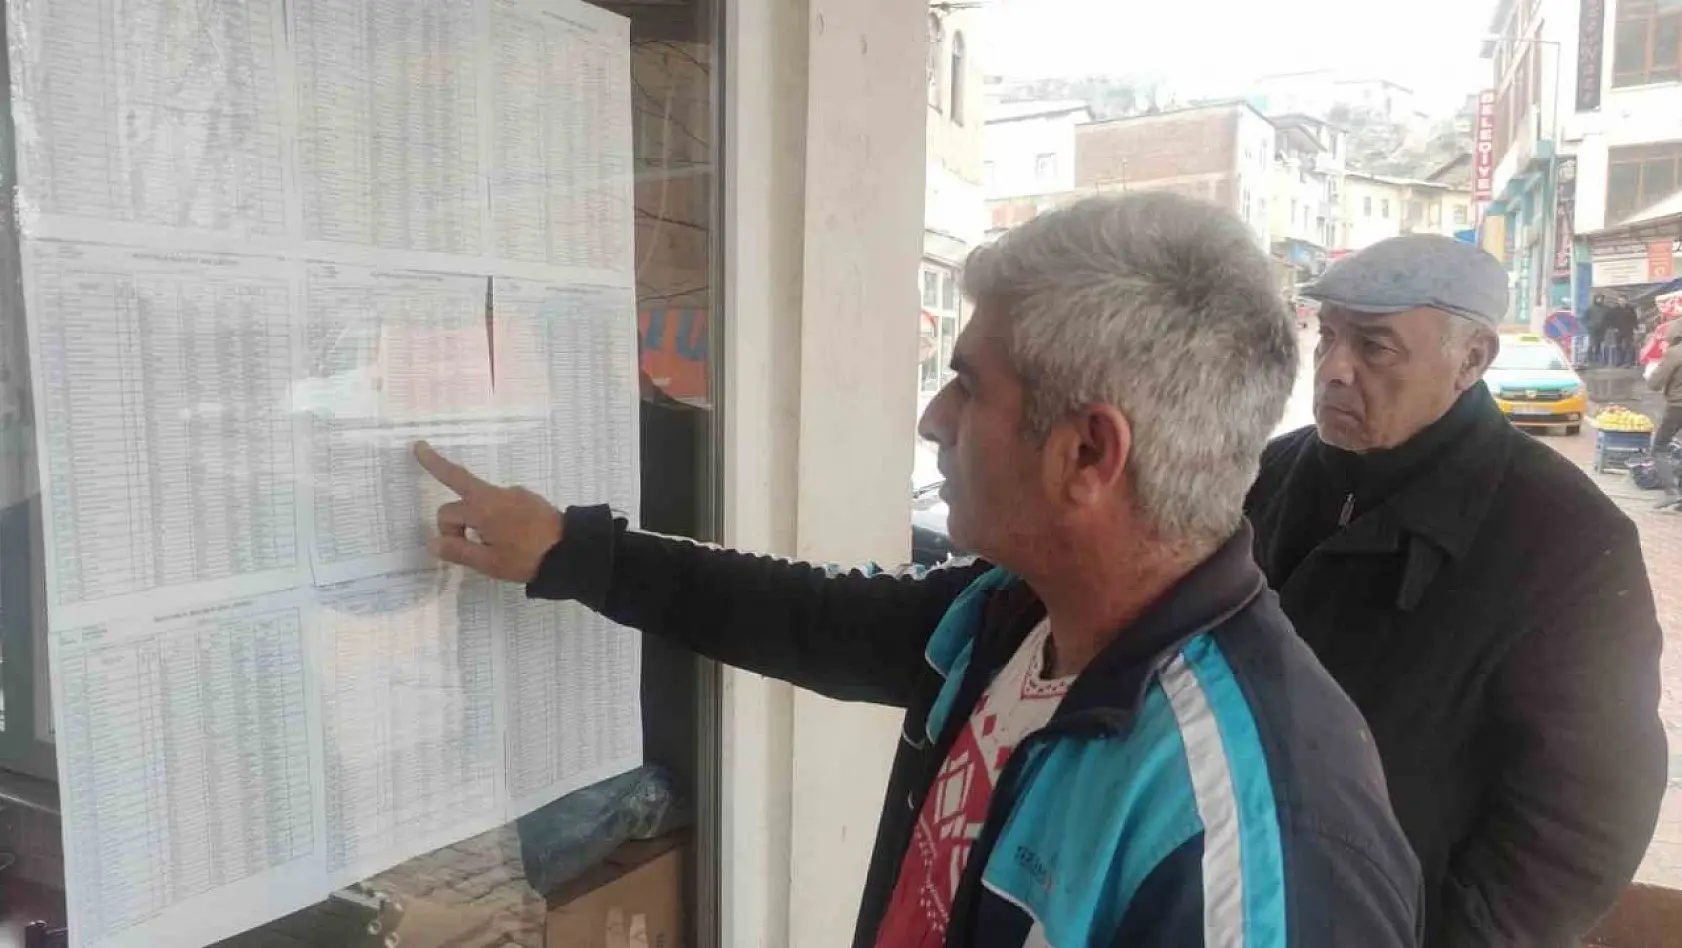 Tunceli'de seçmen listeleri askıya çıktı